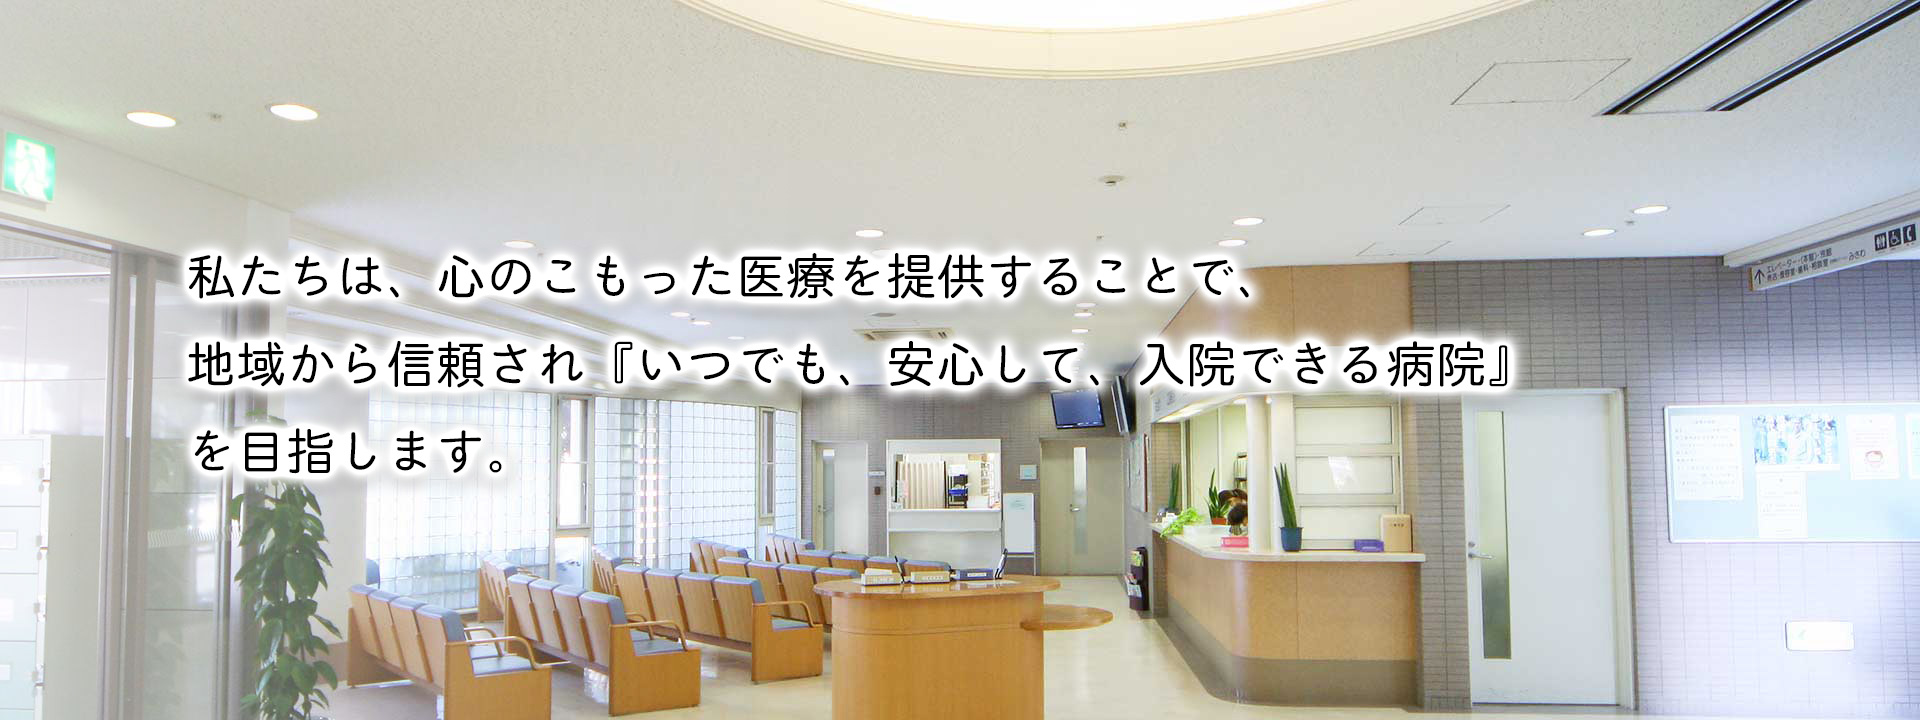 病院 松山 コロナ 新型コロナウイルス感染症の予防接種について 松山市公式ホームページ